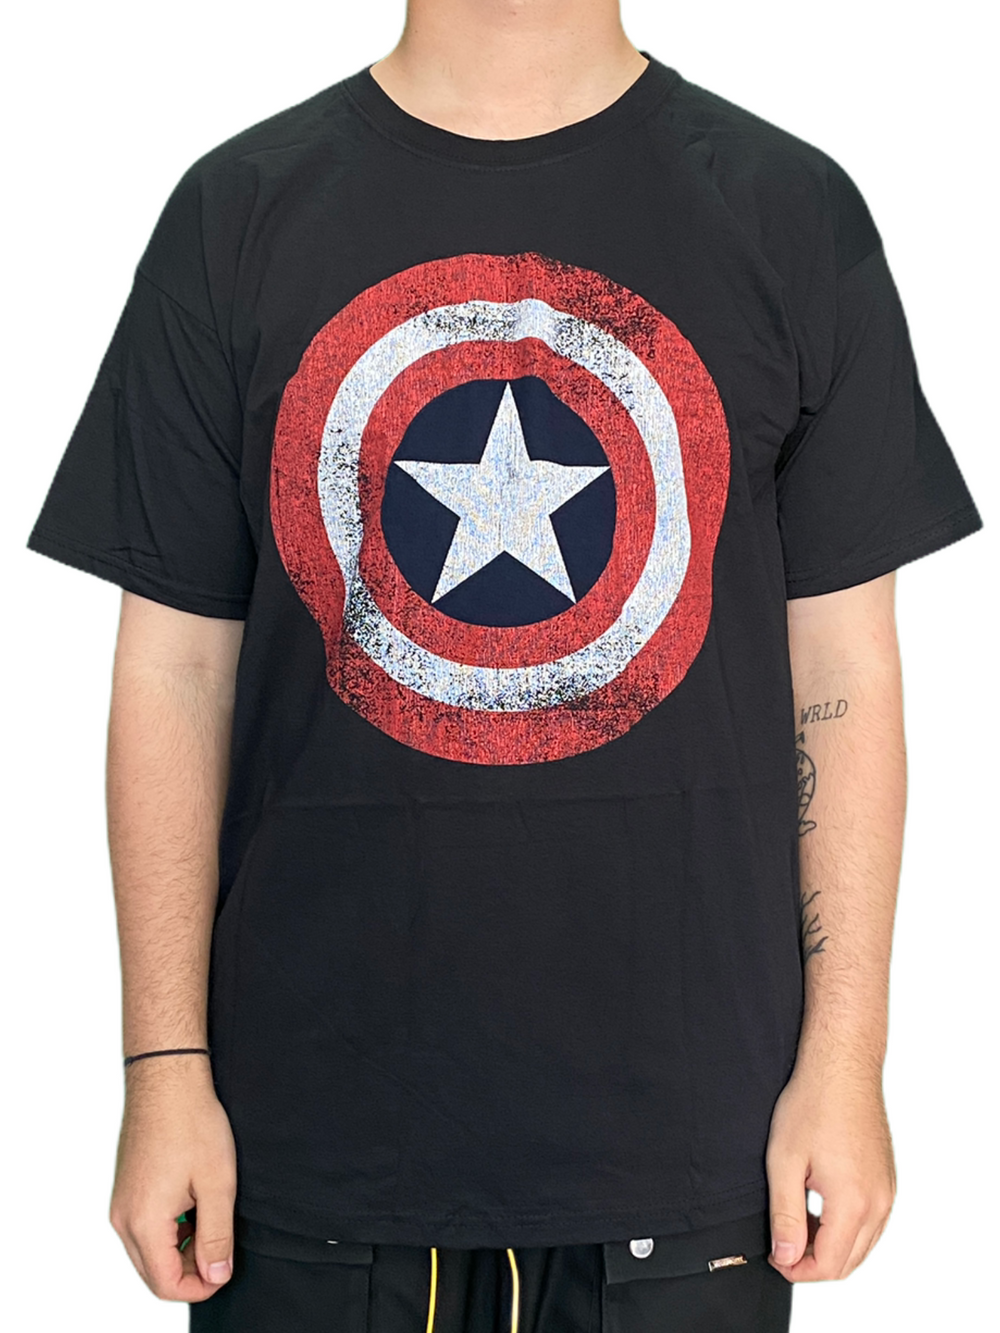 Captain America Shield Marvel Avengers Team Unisex Official T Shirt Brand New BLACK